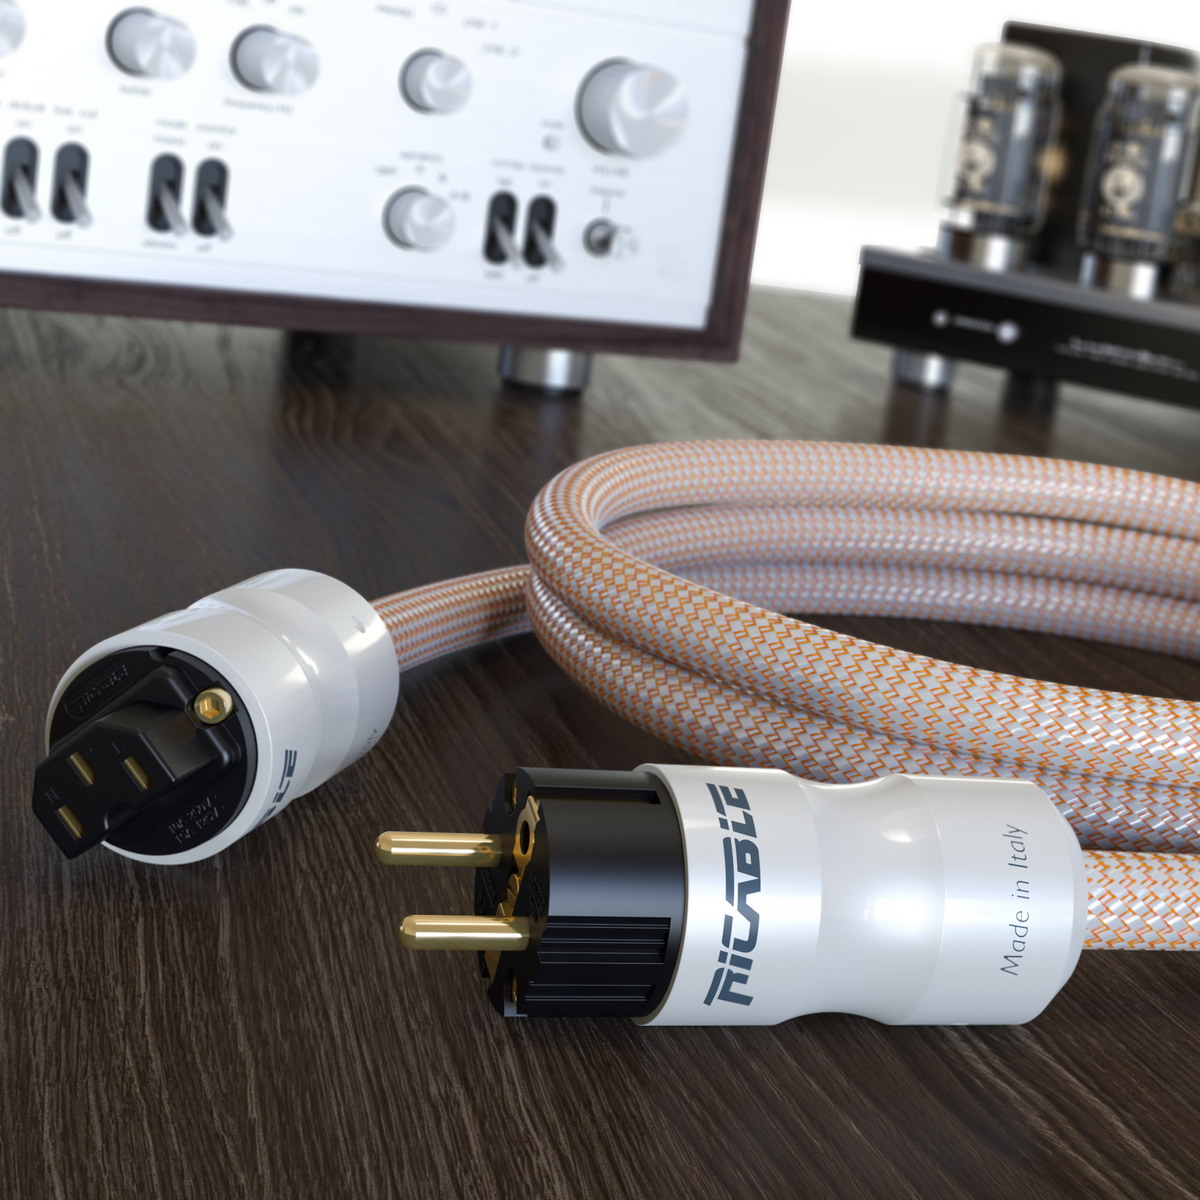 Dwa nowe kable zasilające AC włoskiej firmy Ricable